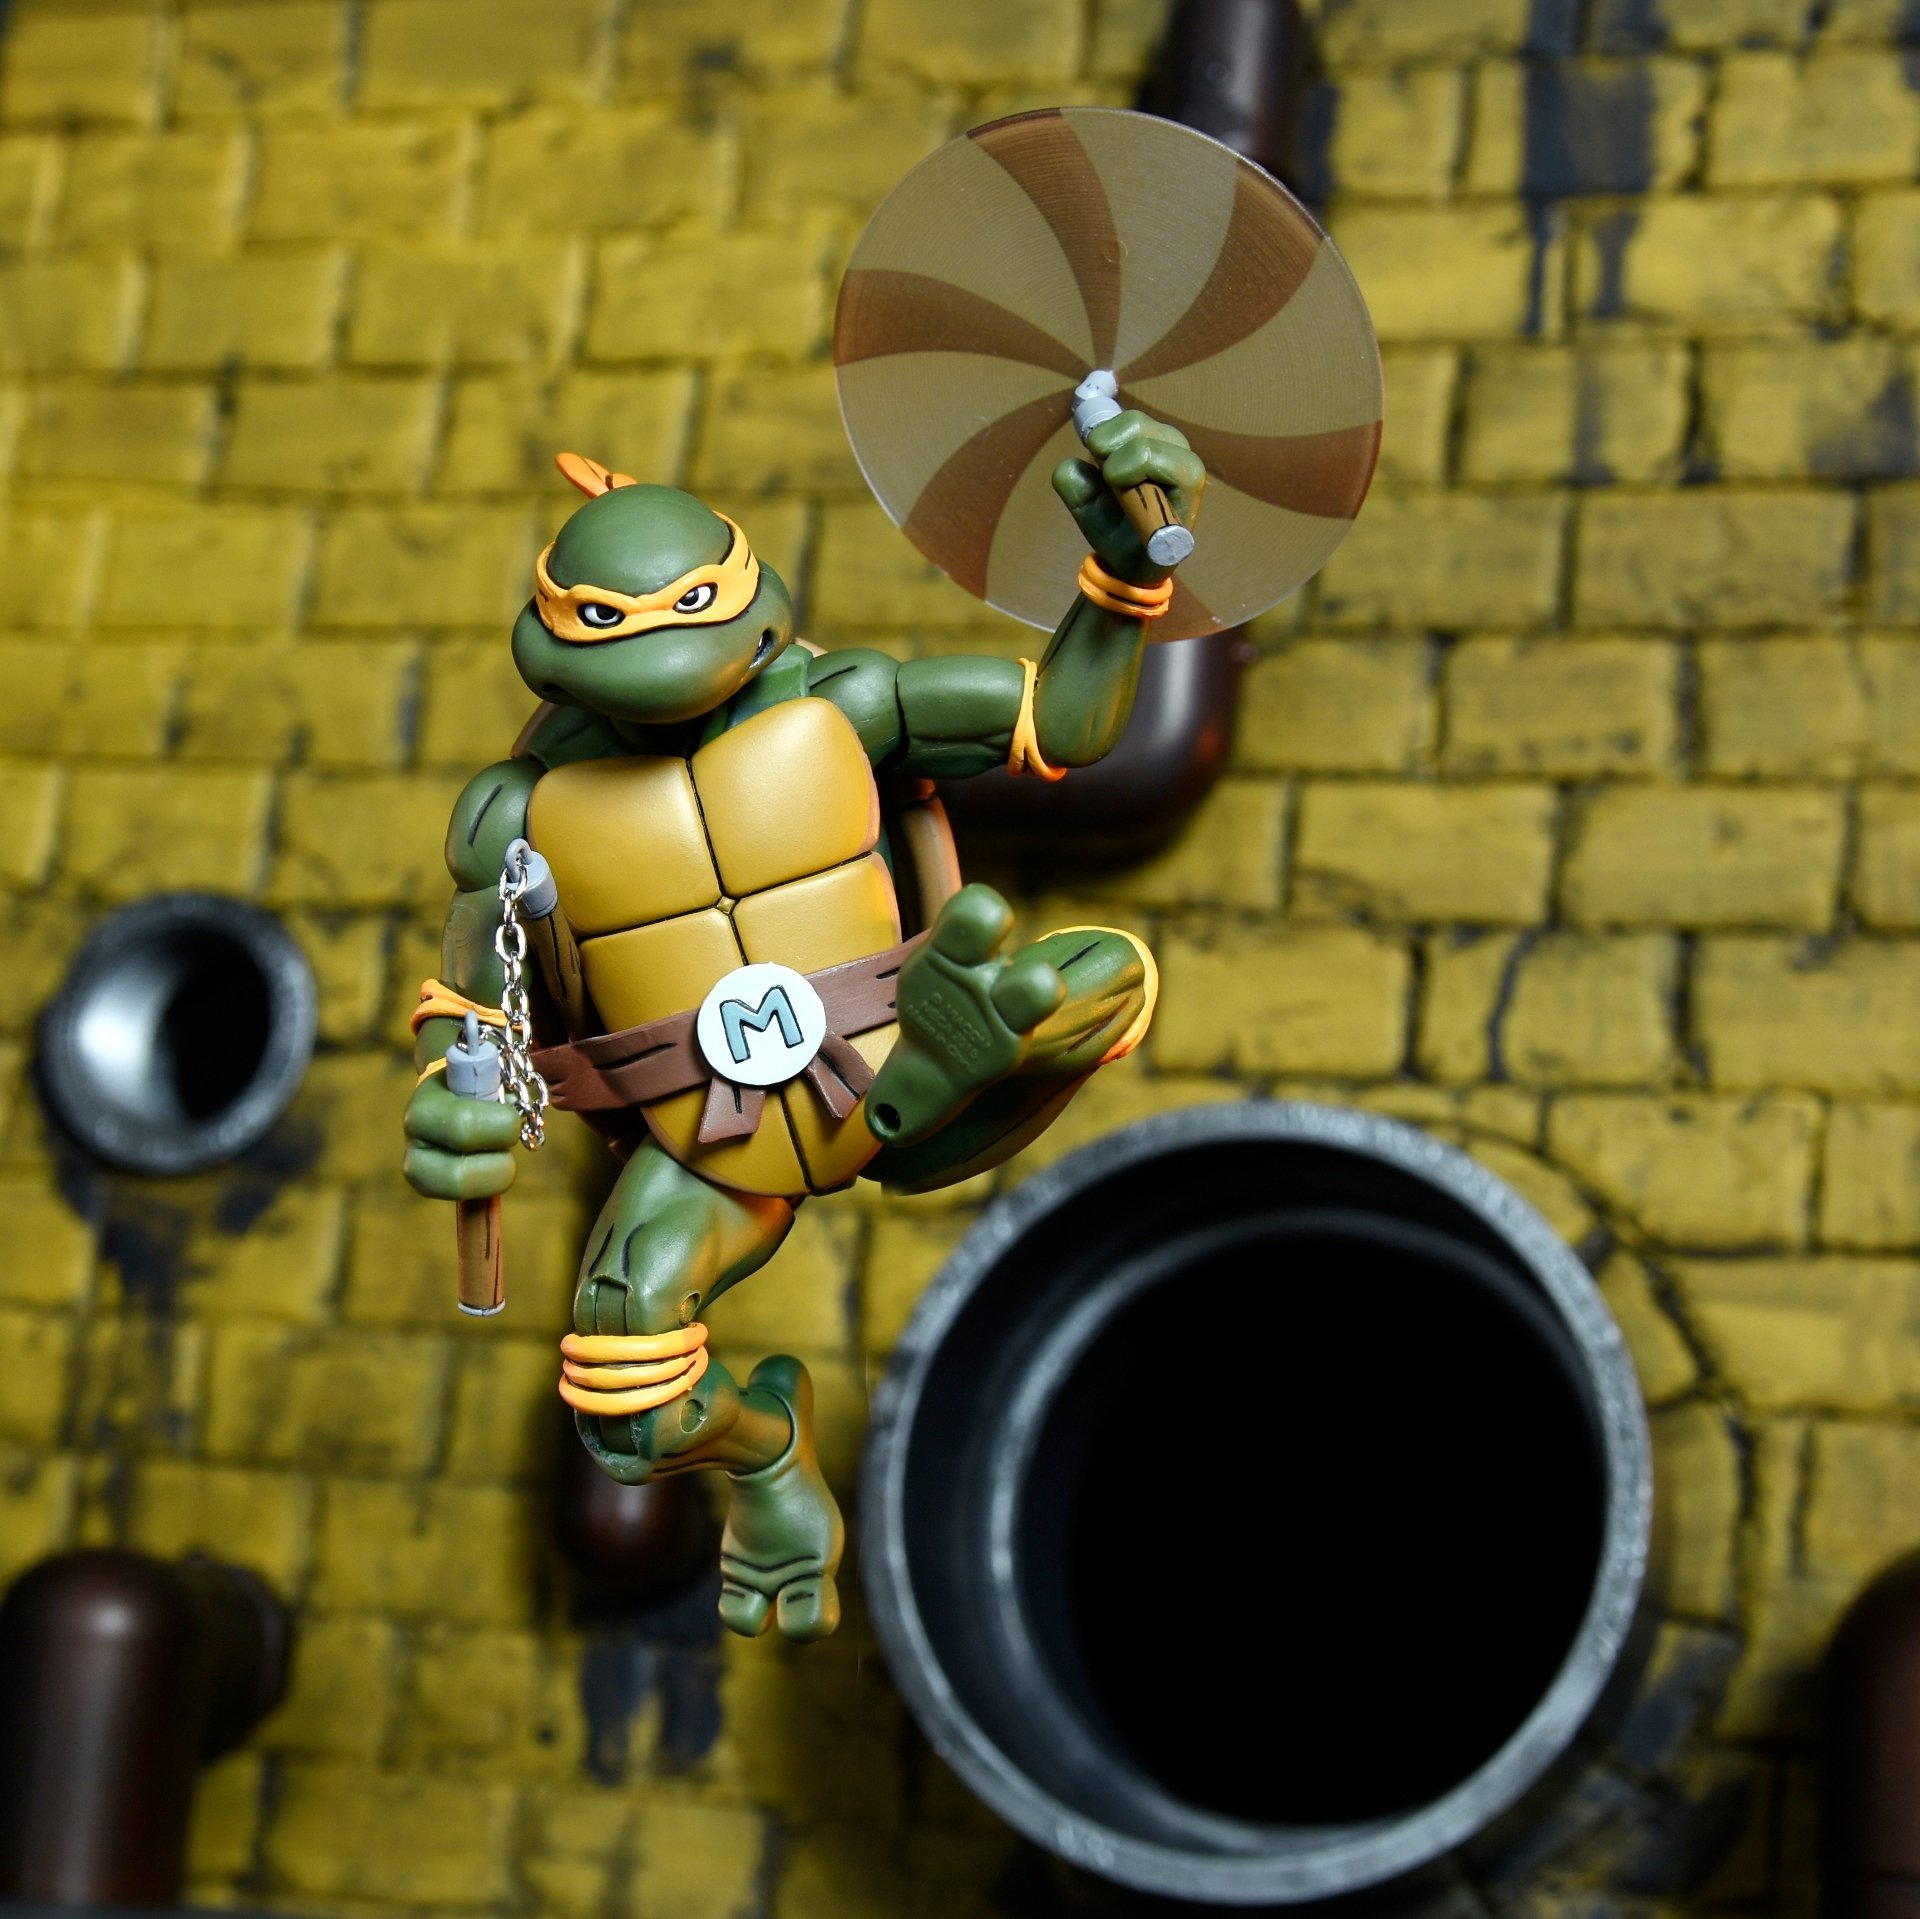 Teenange Mutant Ninja Turtle TMNT Kids Accessories 